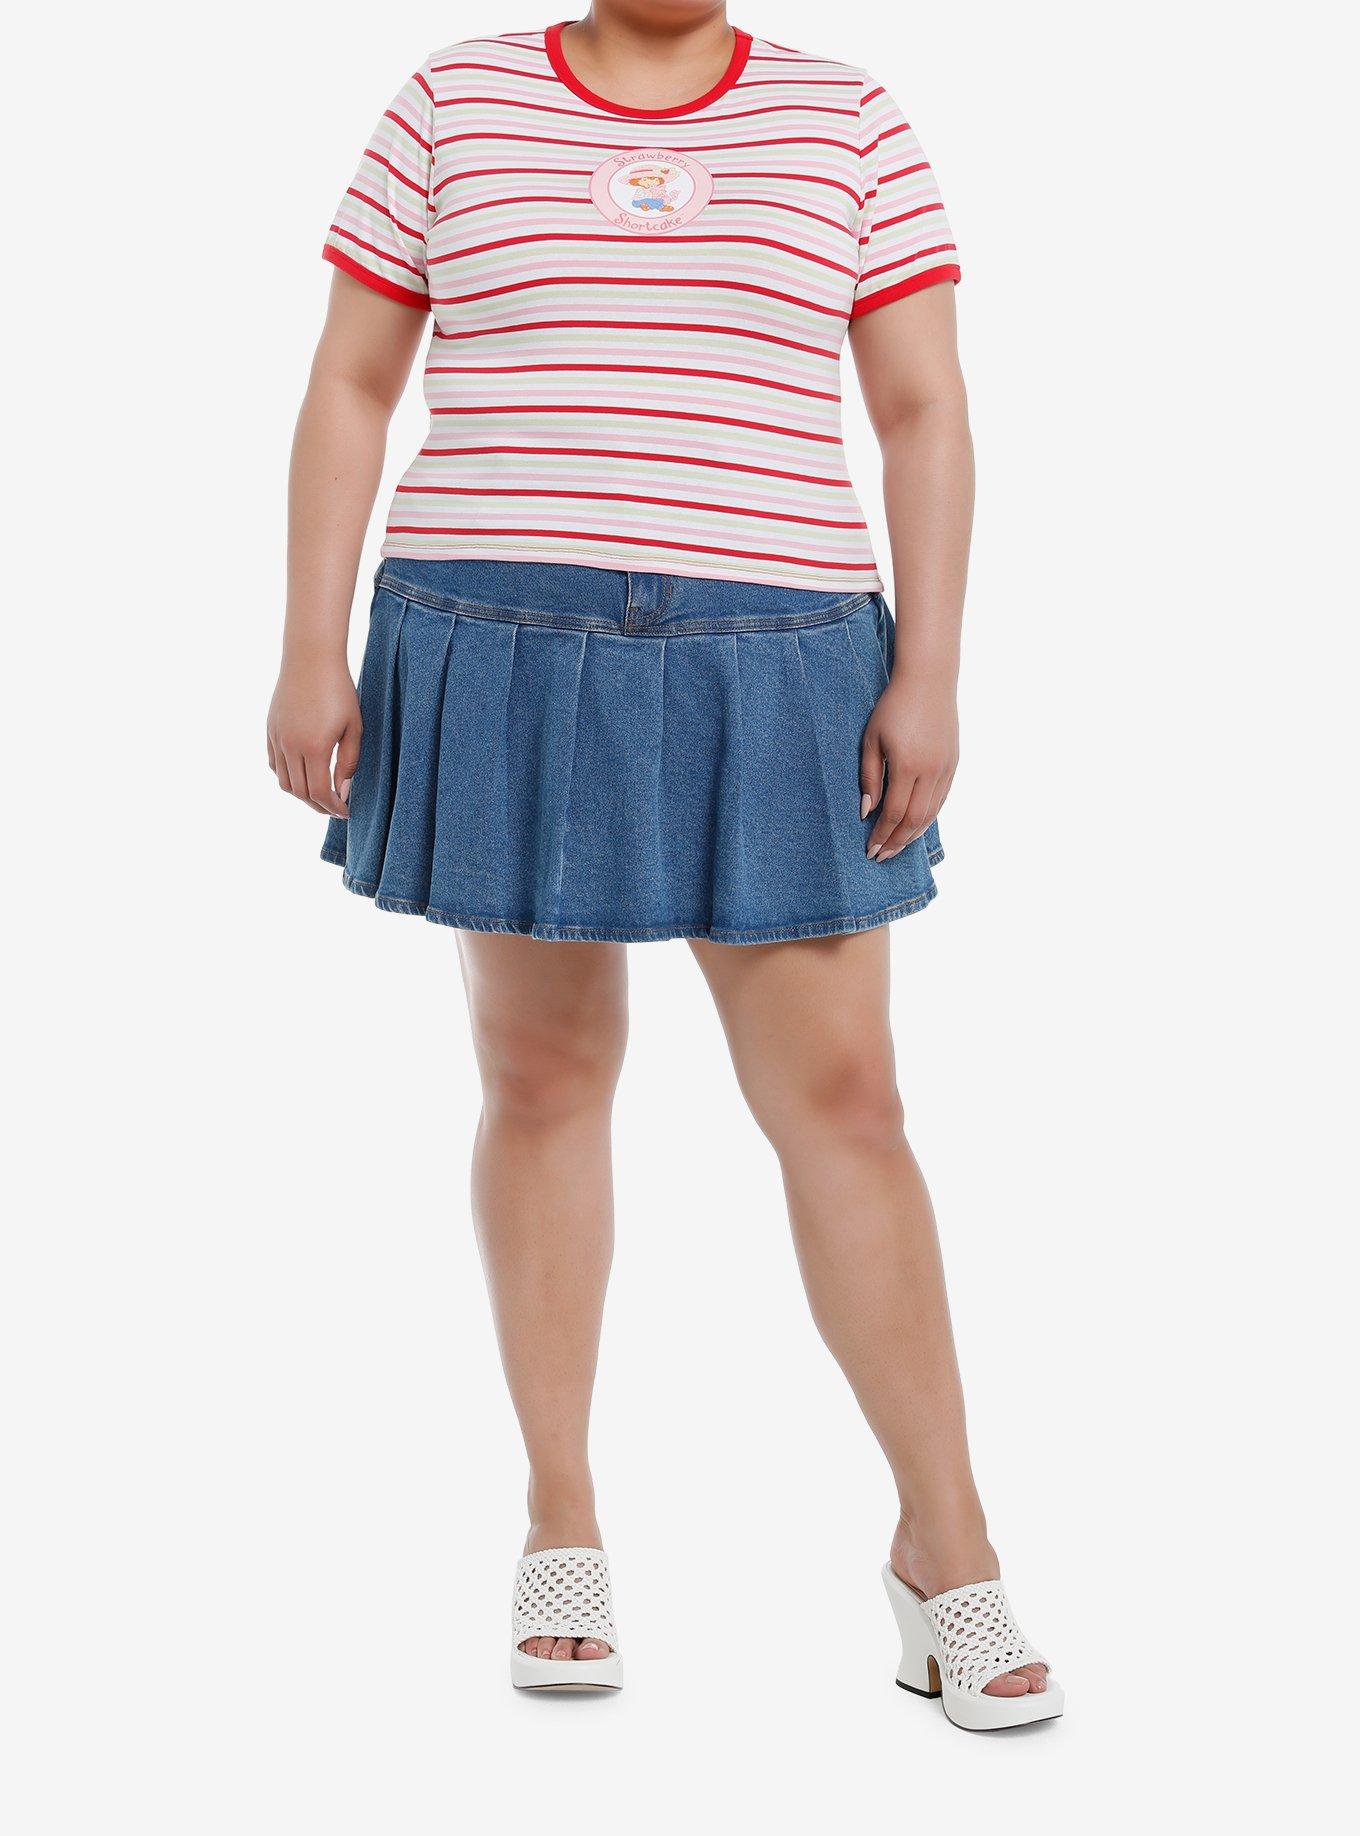 Strawberry Shortcake Stripe Girls Ringer T-Shirt Plus Size, MULTI, alternate